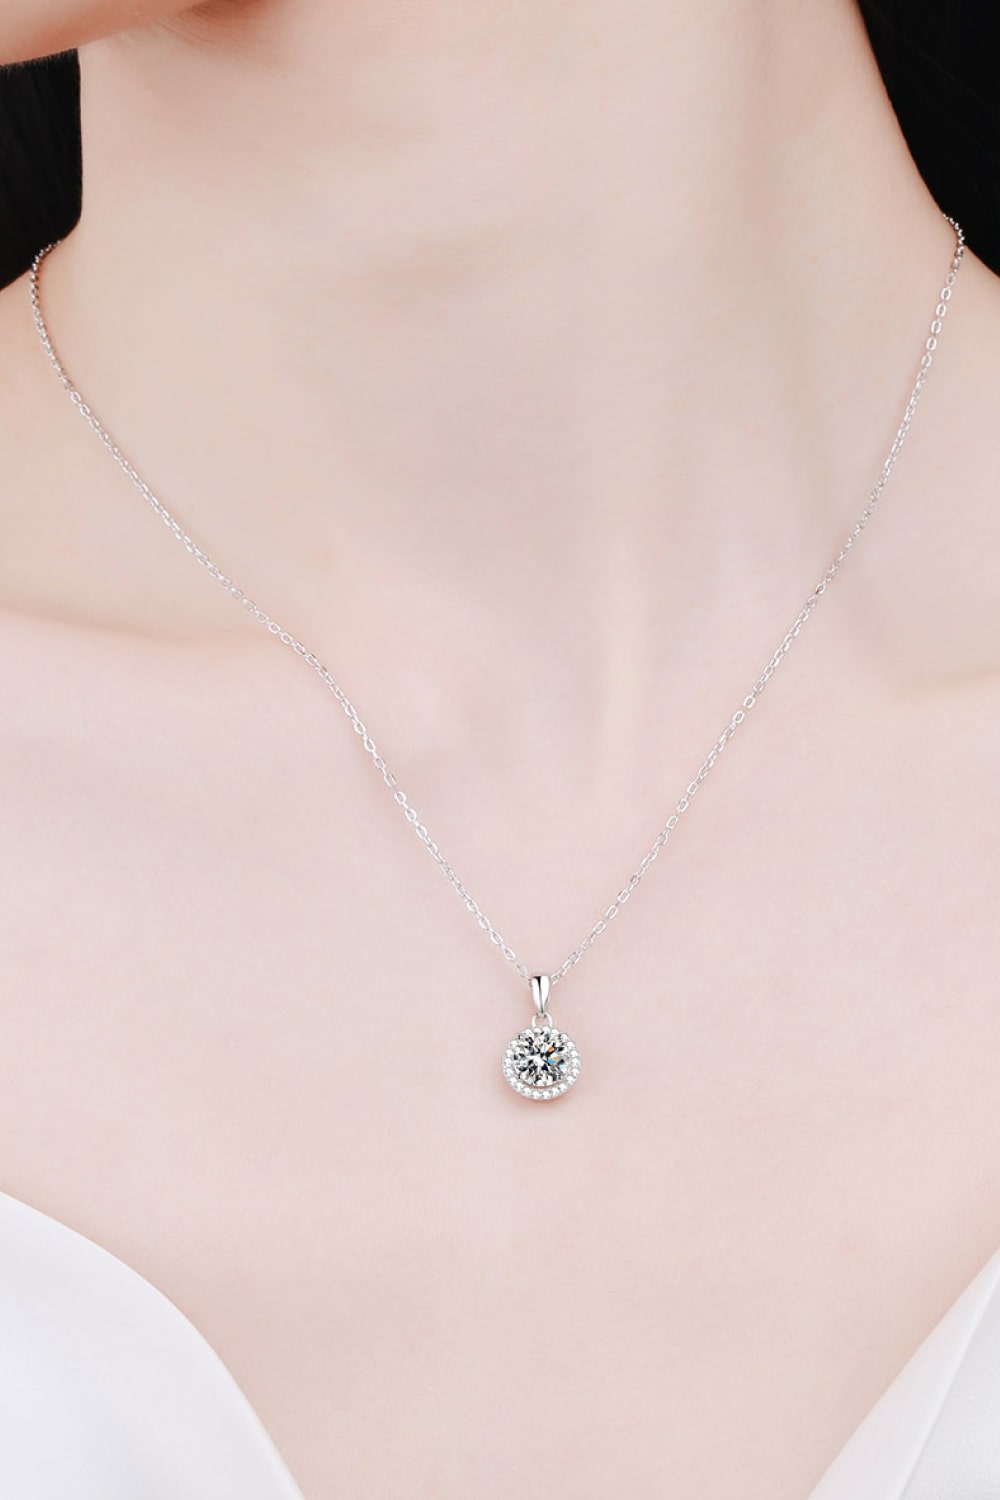 Chance to Charm 1 Carat Moissanite Round Pendant Chain Necklace - DromedarShop.com Online Boutique